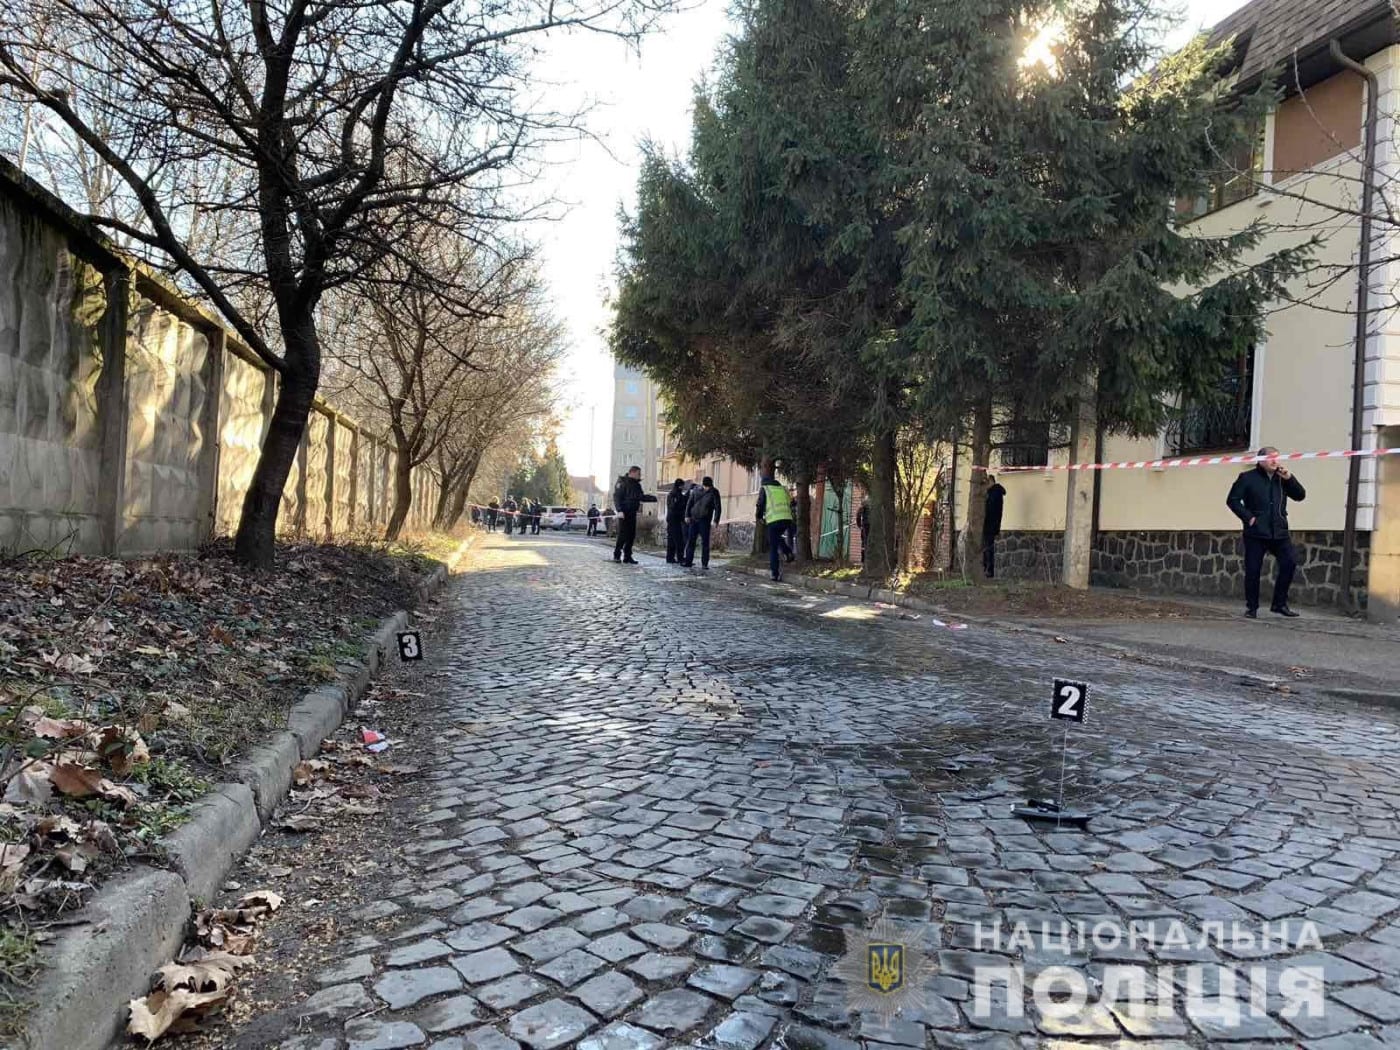 Ранены двое человек: Официальные подробности утренней перестрелки в Мукачево 